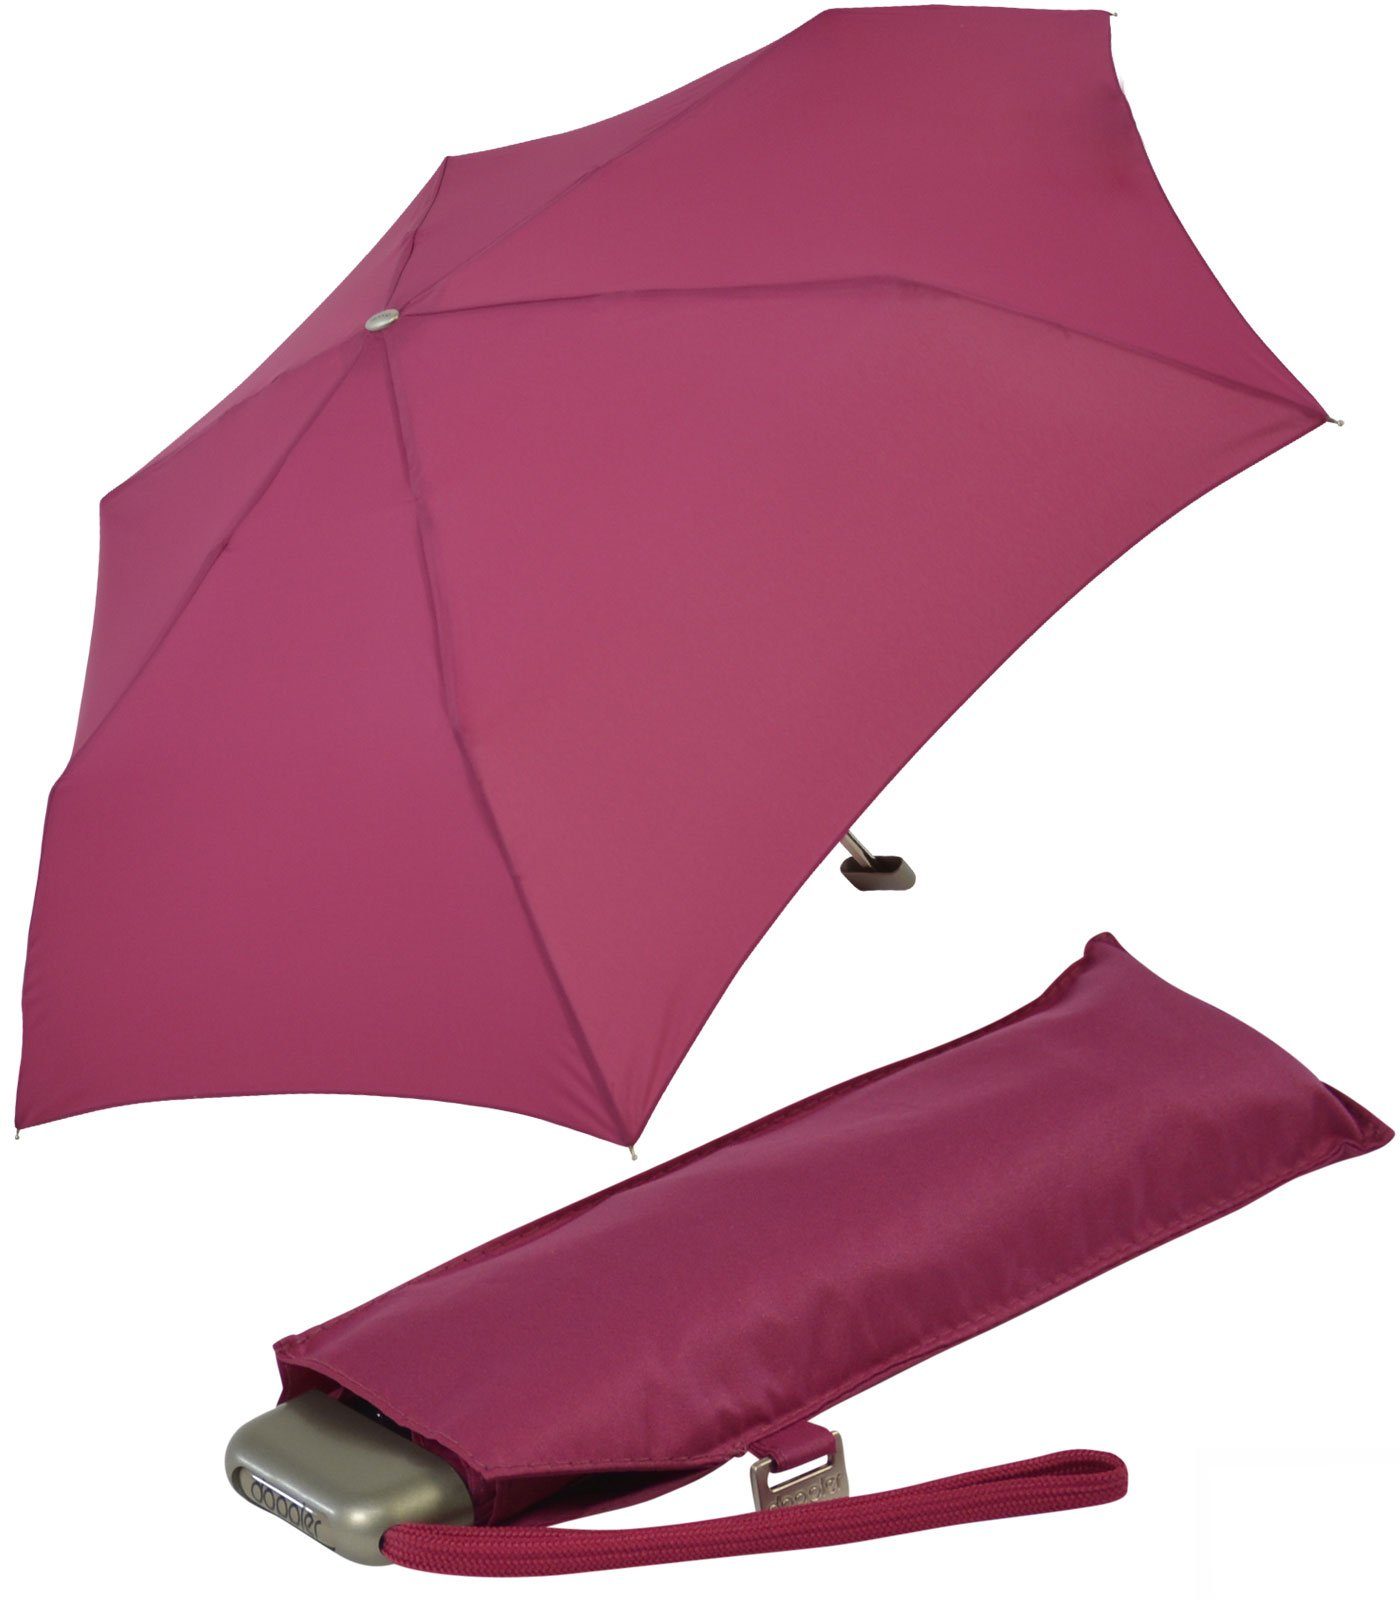 doppler® Langregenschirm ein leichter und flacher Schirm für jede Tasche, dieser treue Begleiter findet überall Platz berry